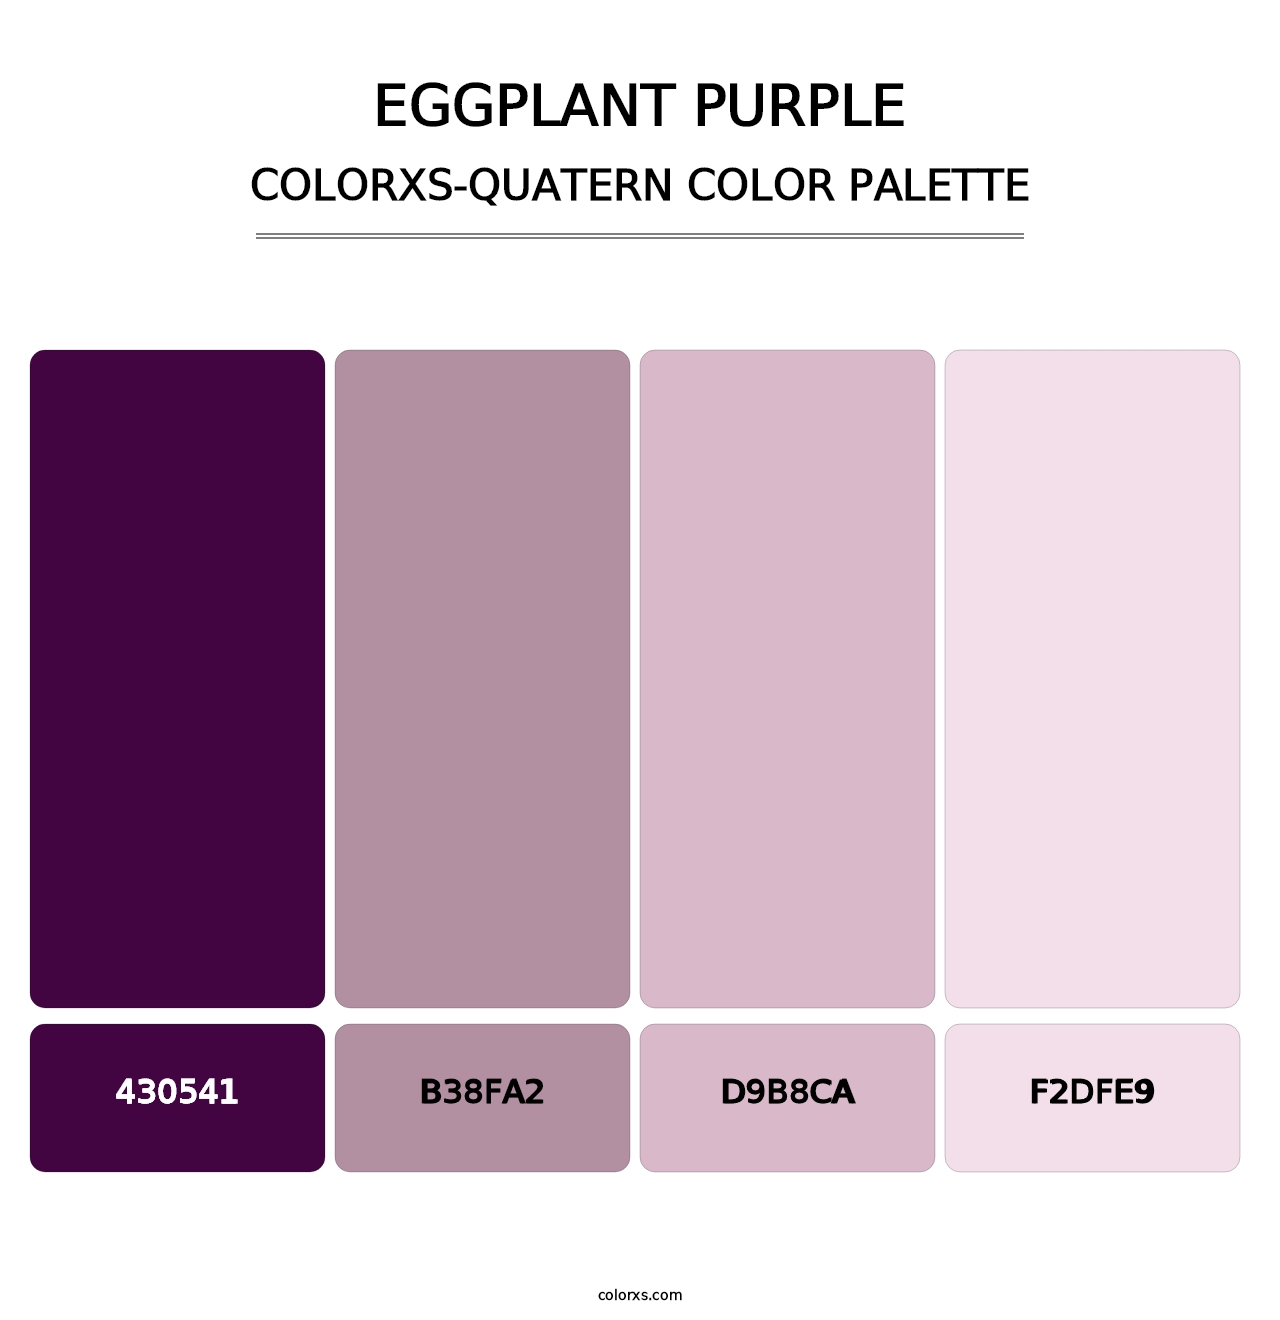 Eggplant Purple - Colorxs Quatern Palette